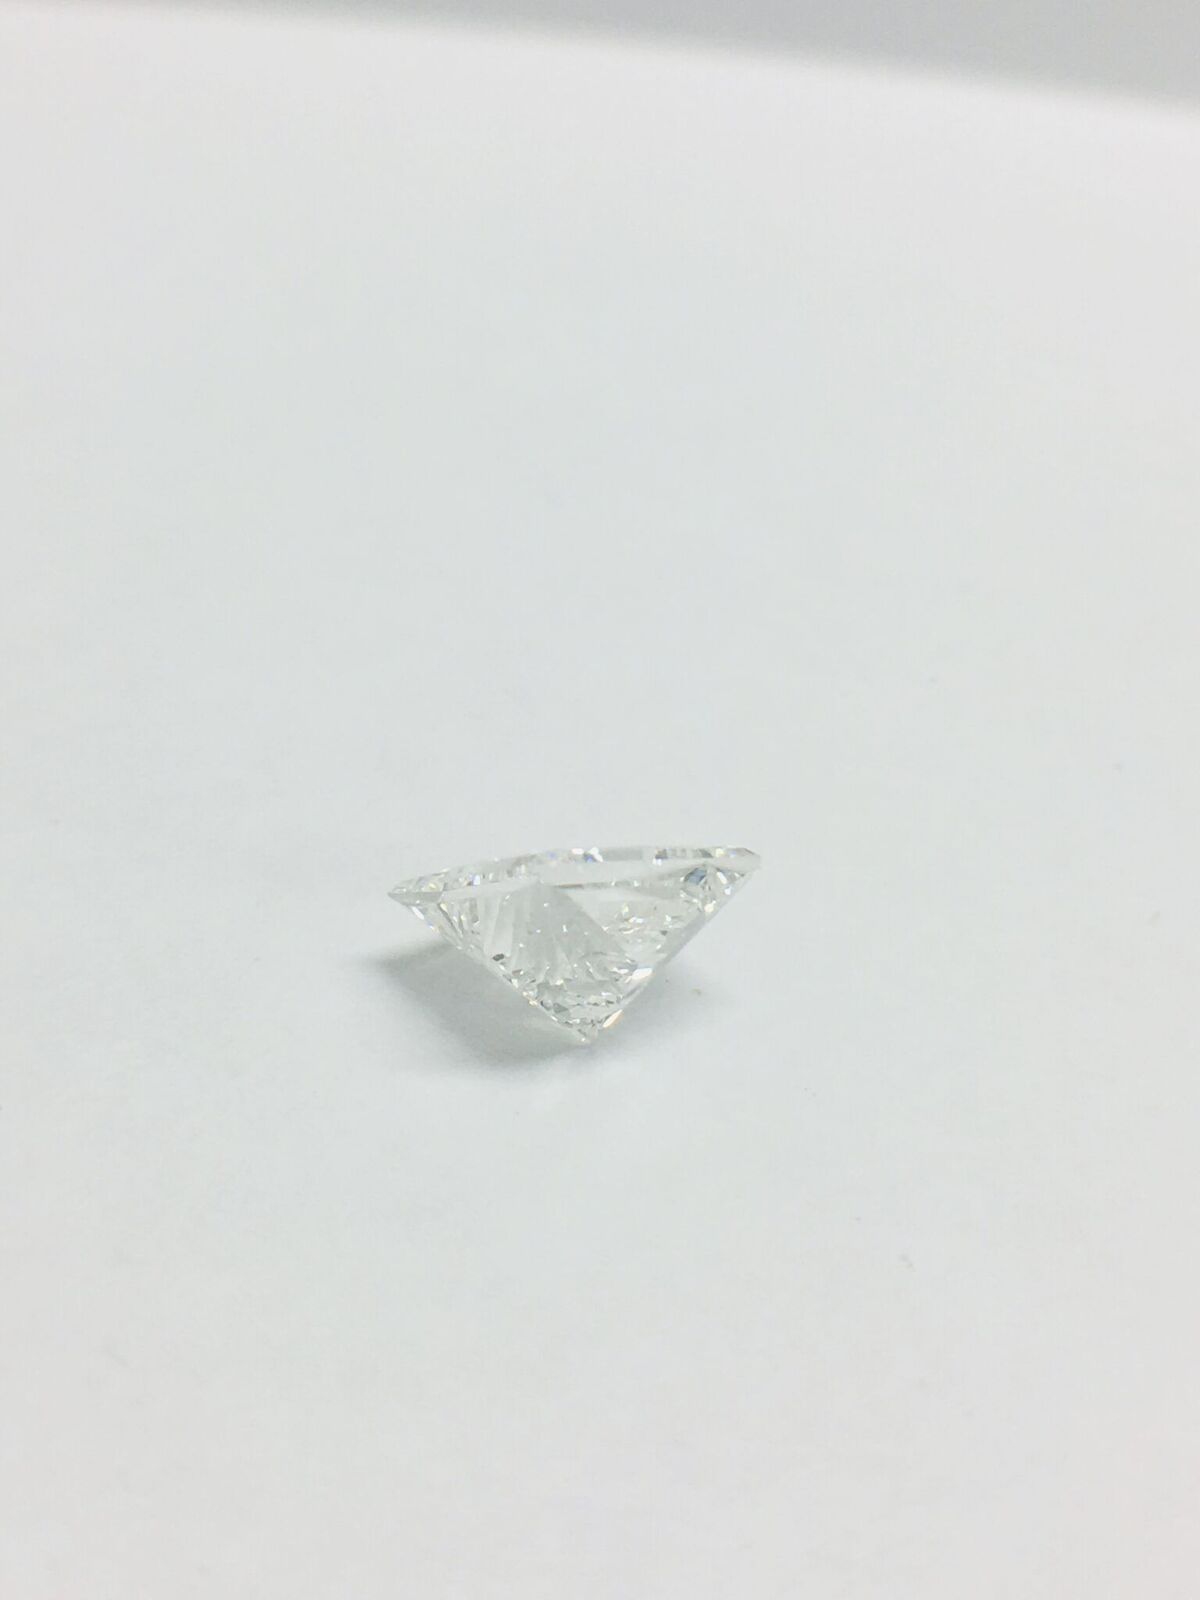 1.95ct Princess cut Diamond - Image 17 of 42